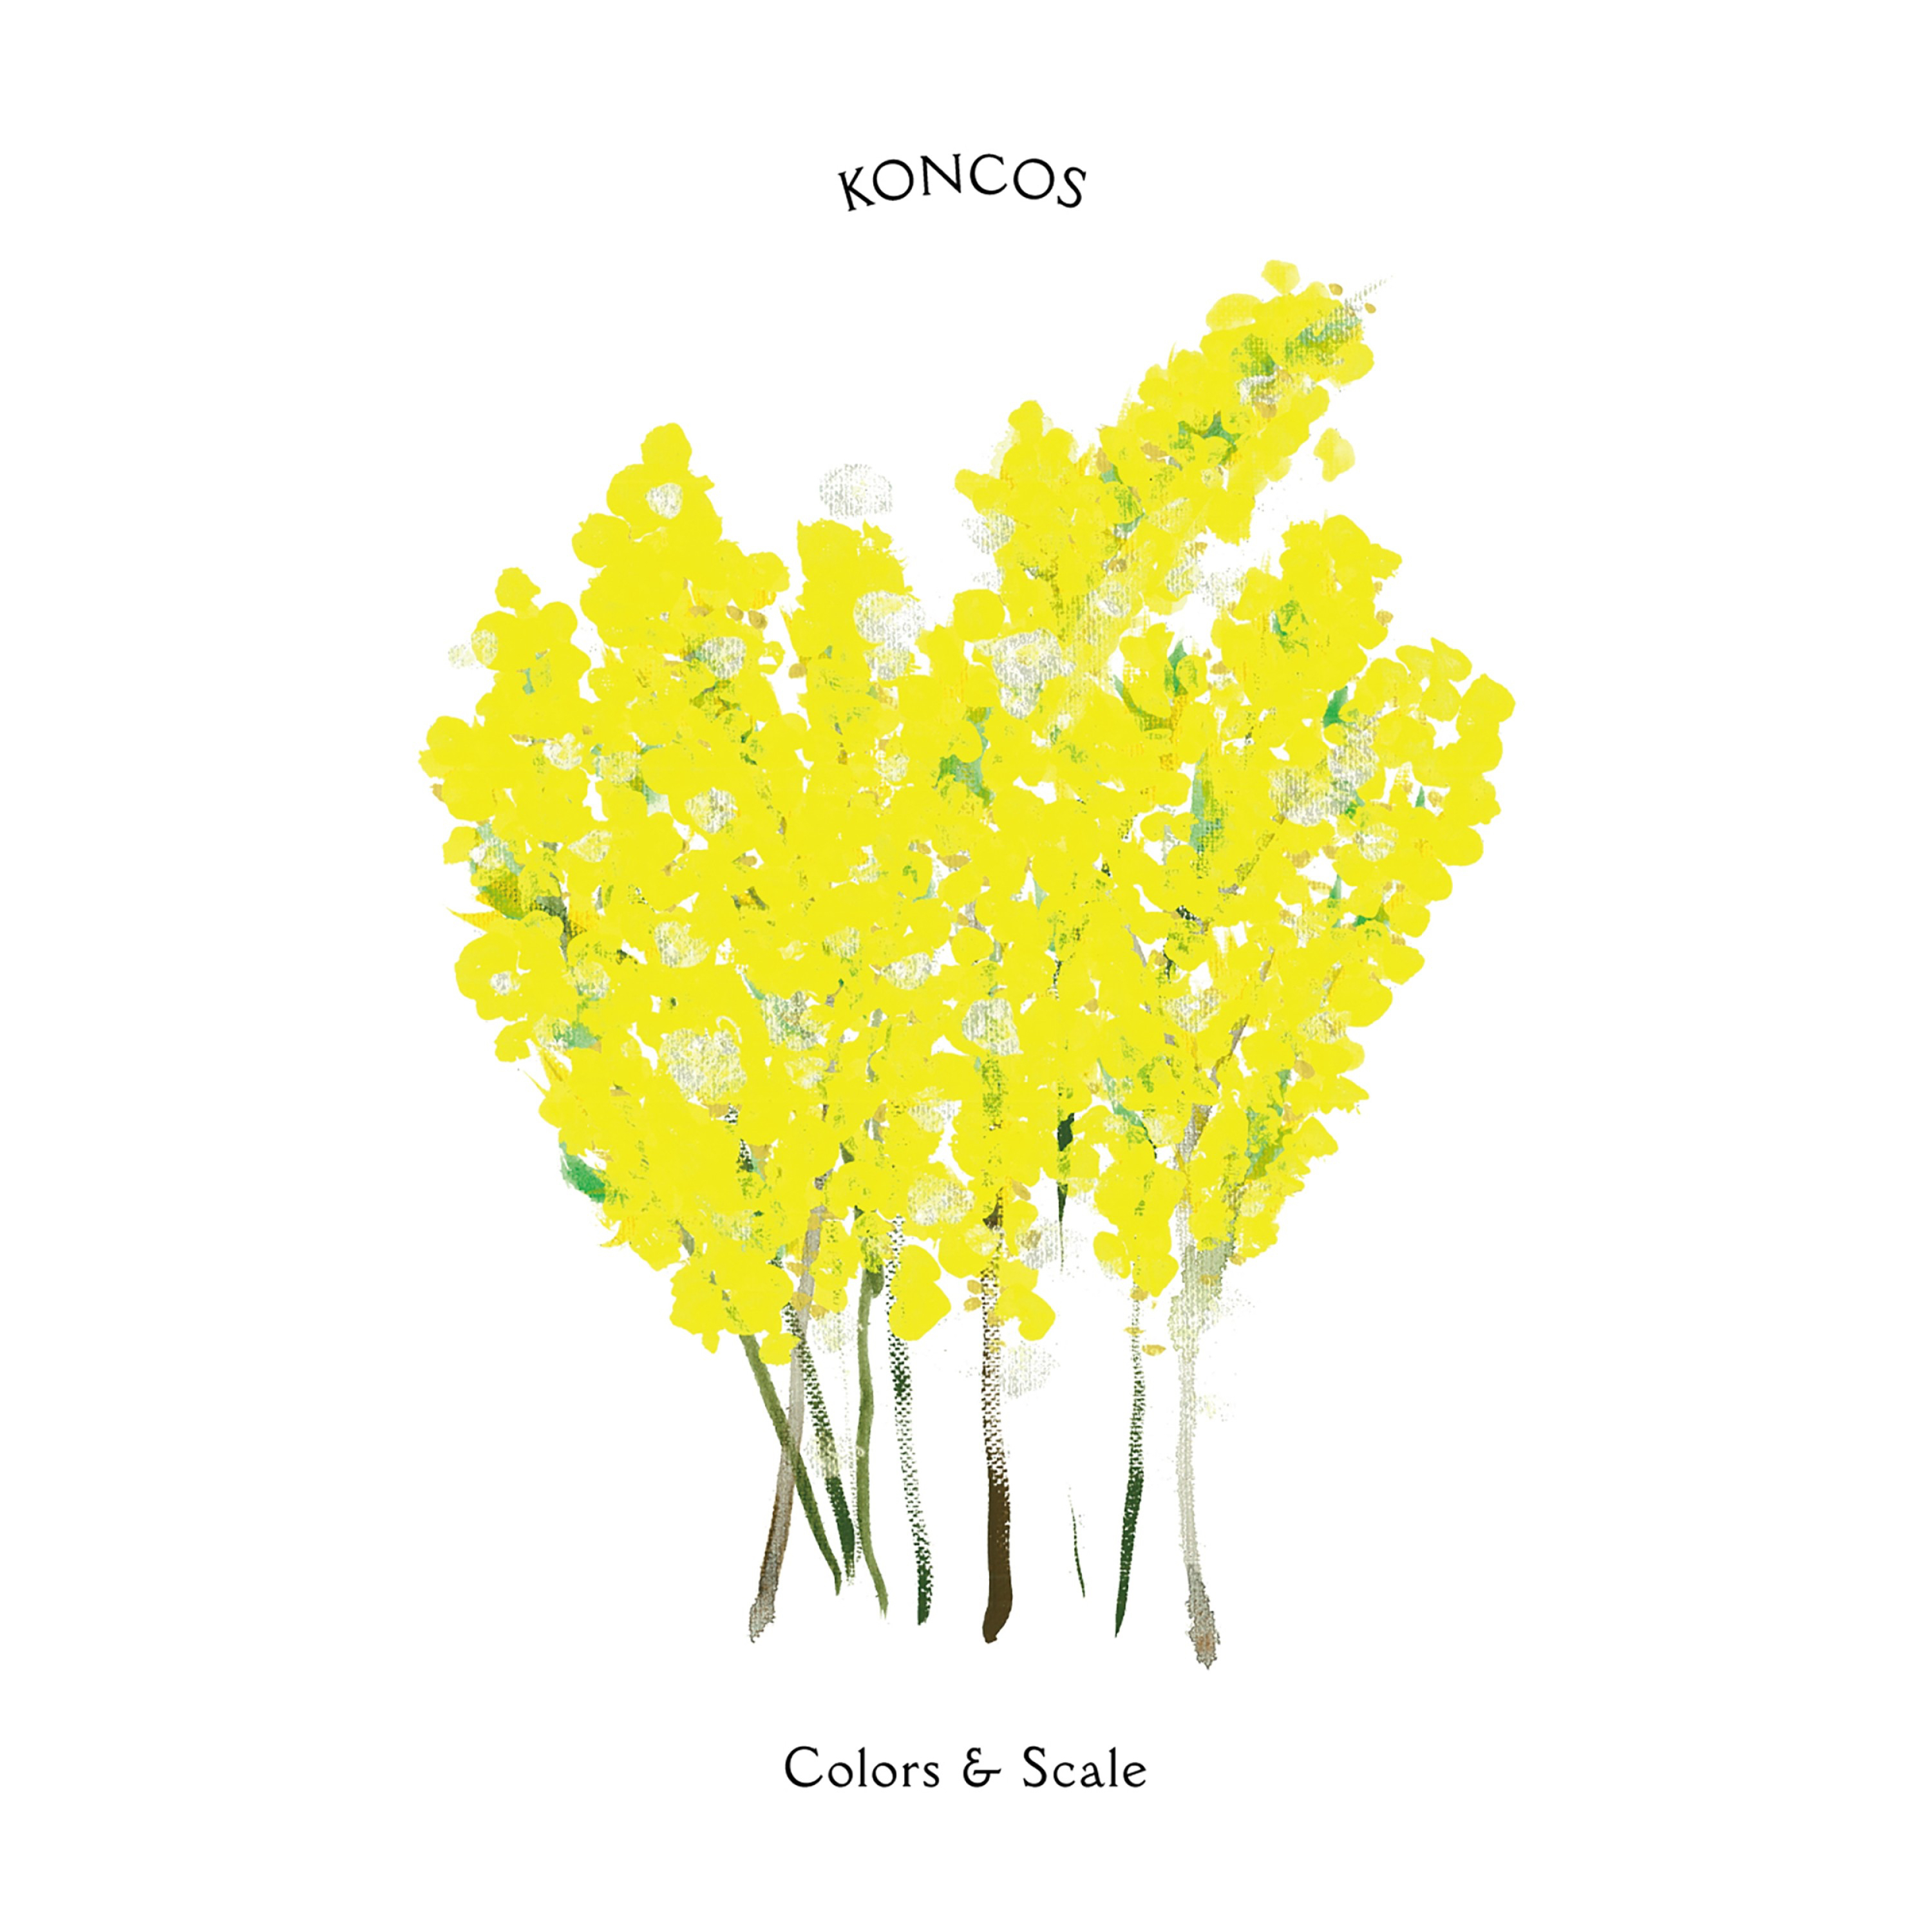 KONCOS (コンコス) 3rdアルバム『Colors & Scale (カラーズ アンド スケール)』(2016年7月20日発売) 高画質CDジャケット画像 (ジャケ写)